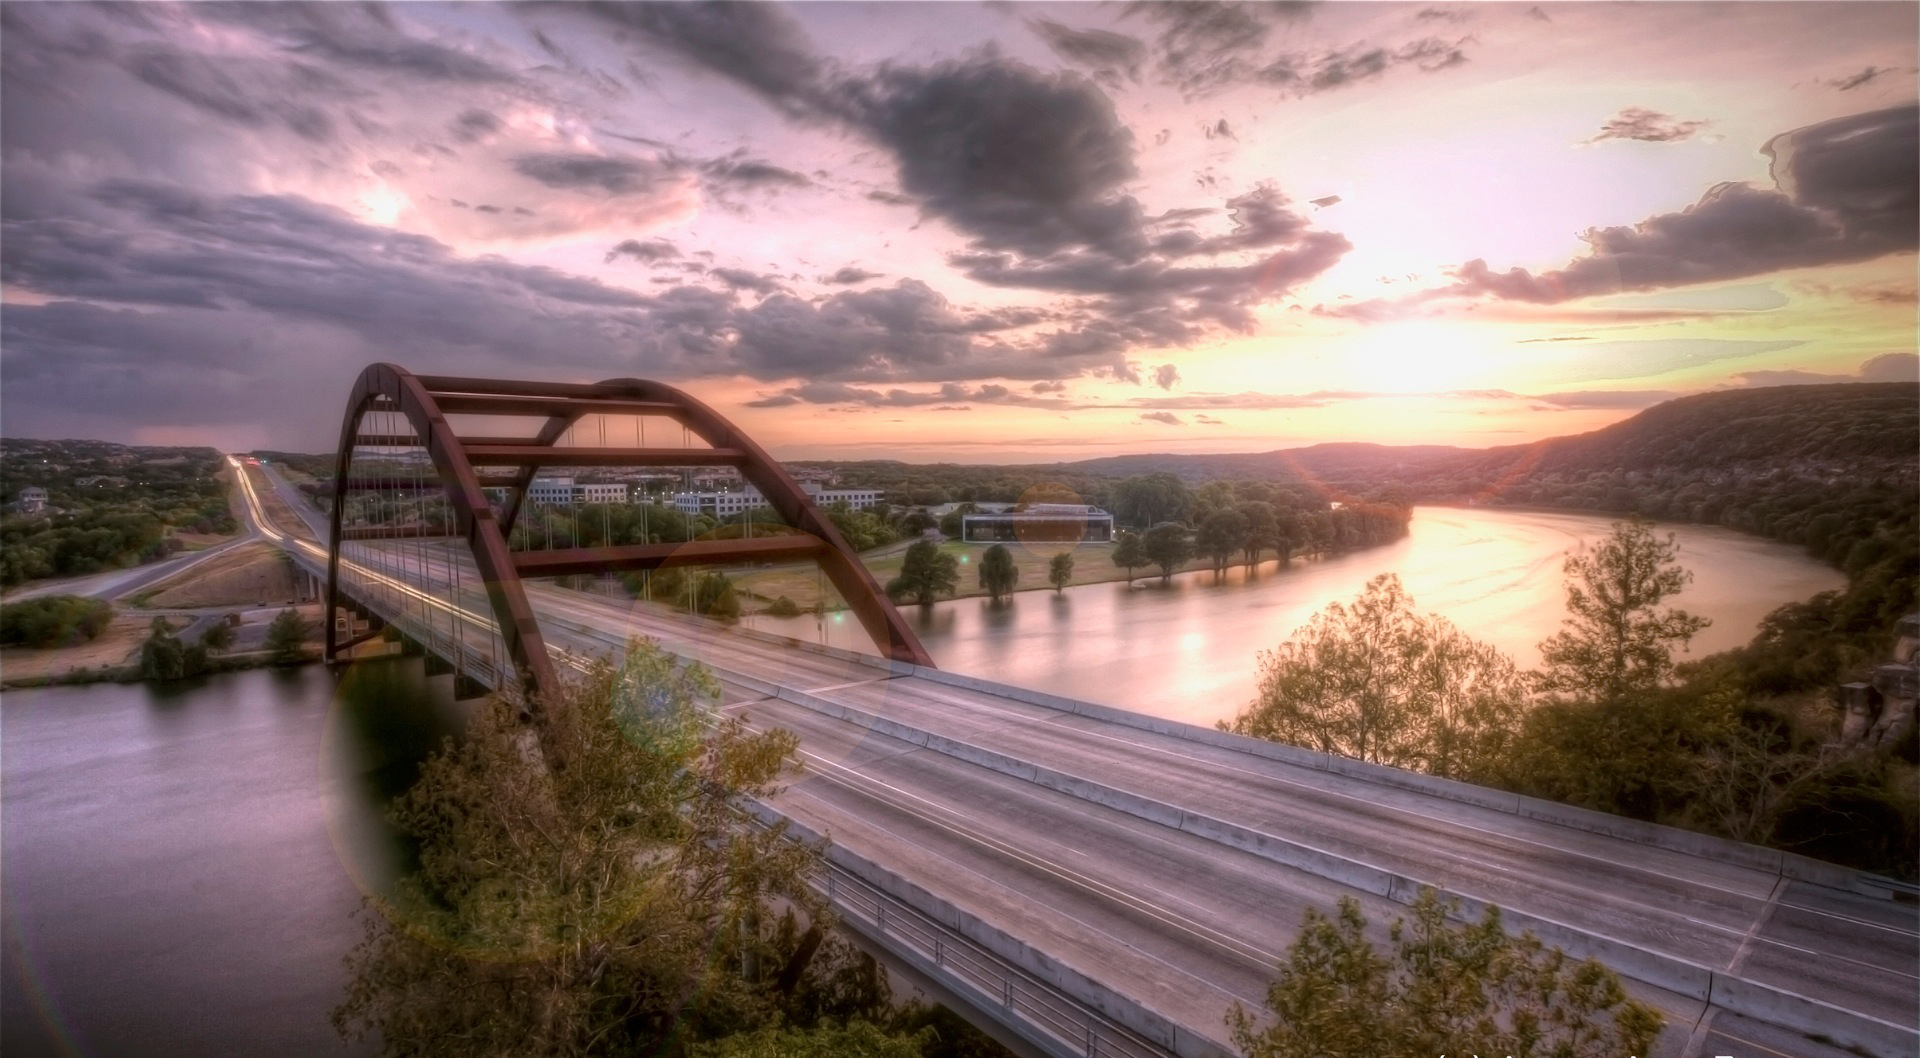 Austin 360 Bridge HDR Images. 